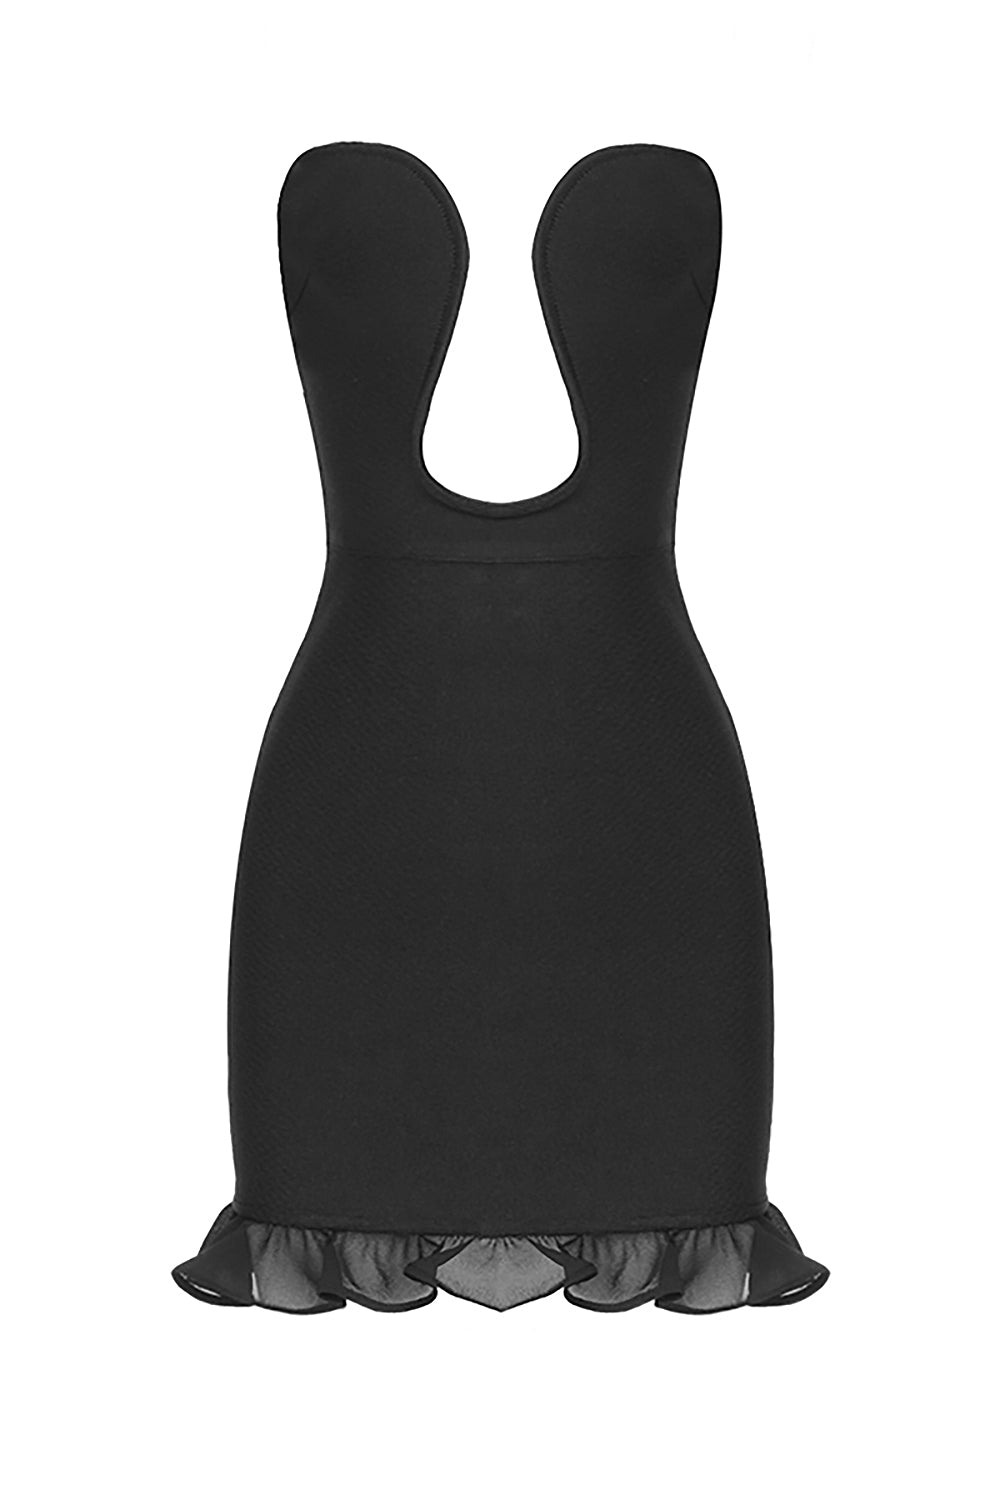 Black Strapless Bandage Mini Dress